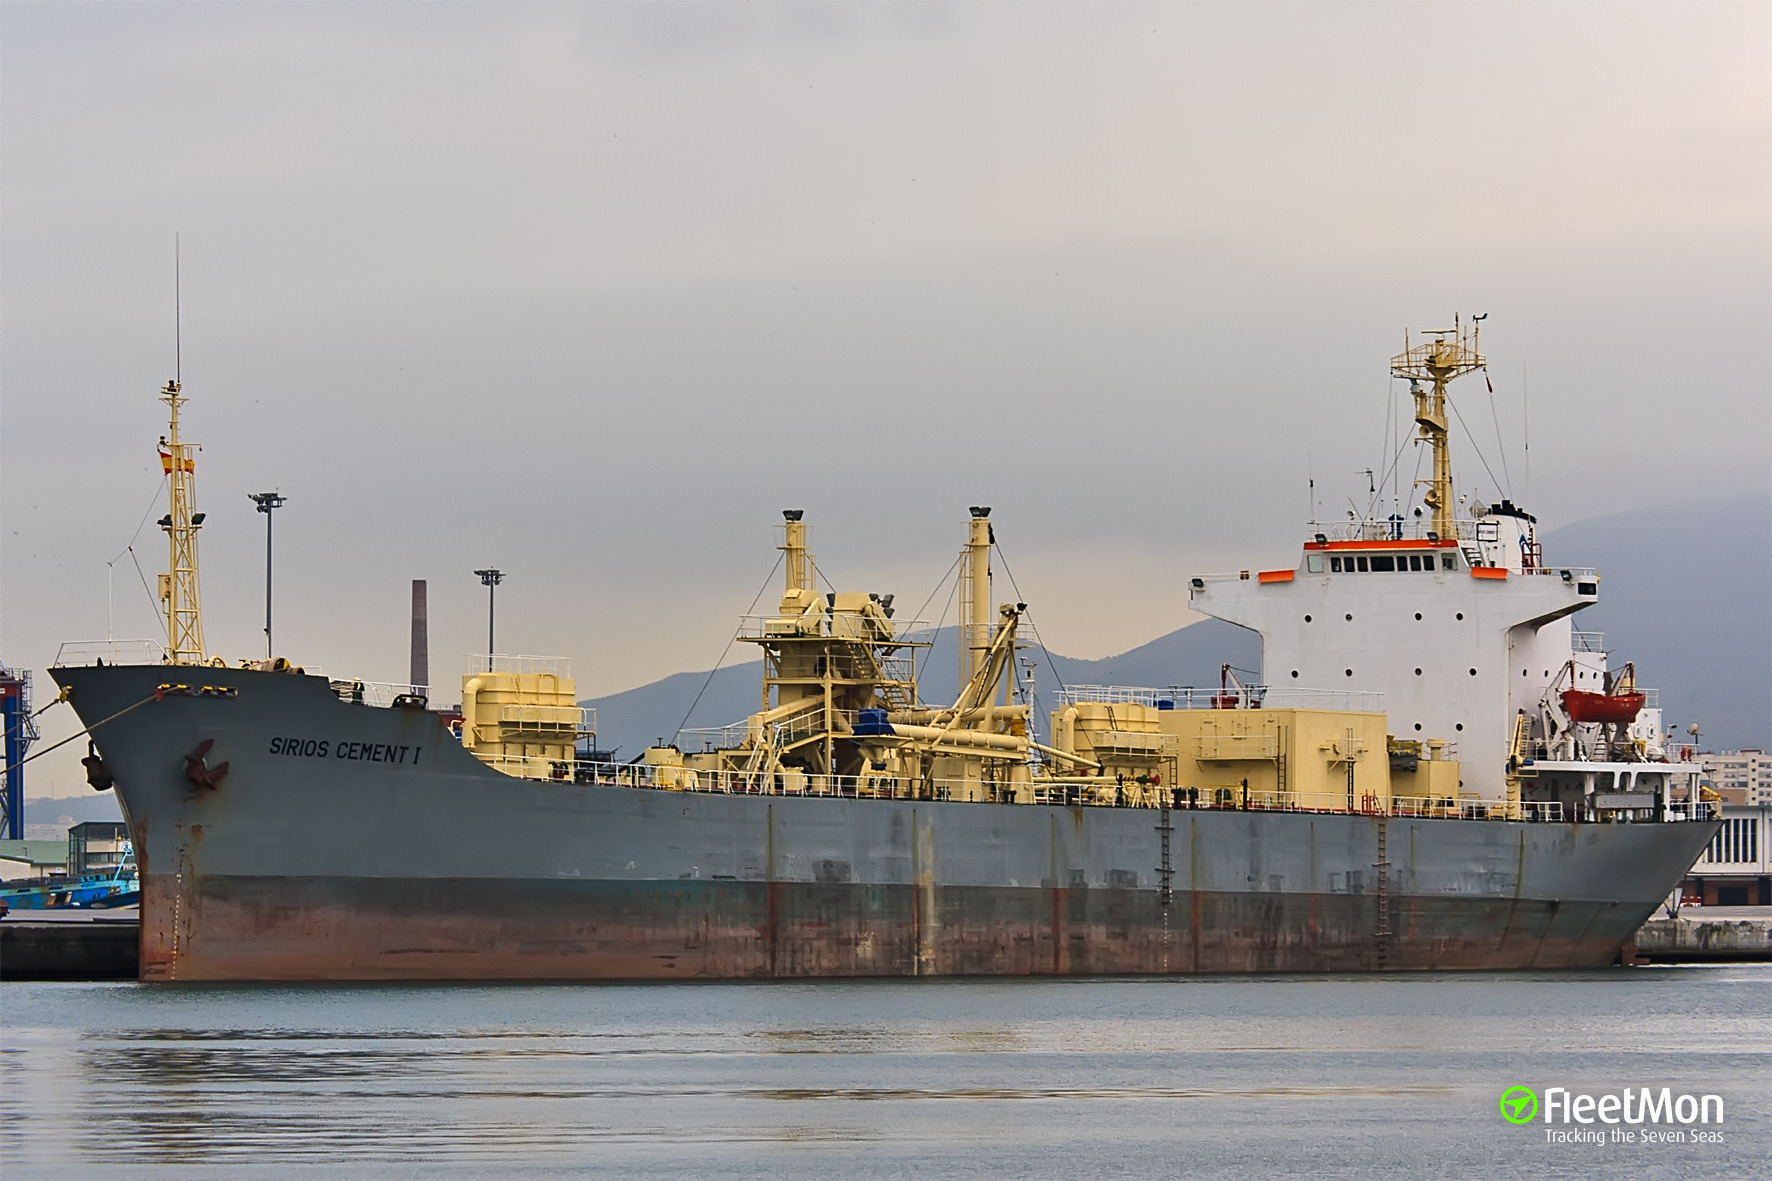 Cement carrier grounding, Greece | SIRIOS CEMENT I - FleetMon Maritime News